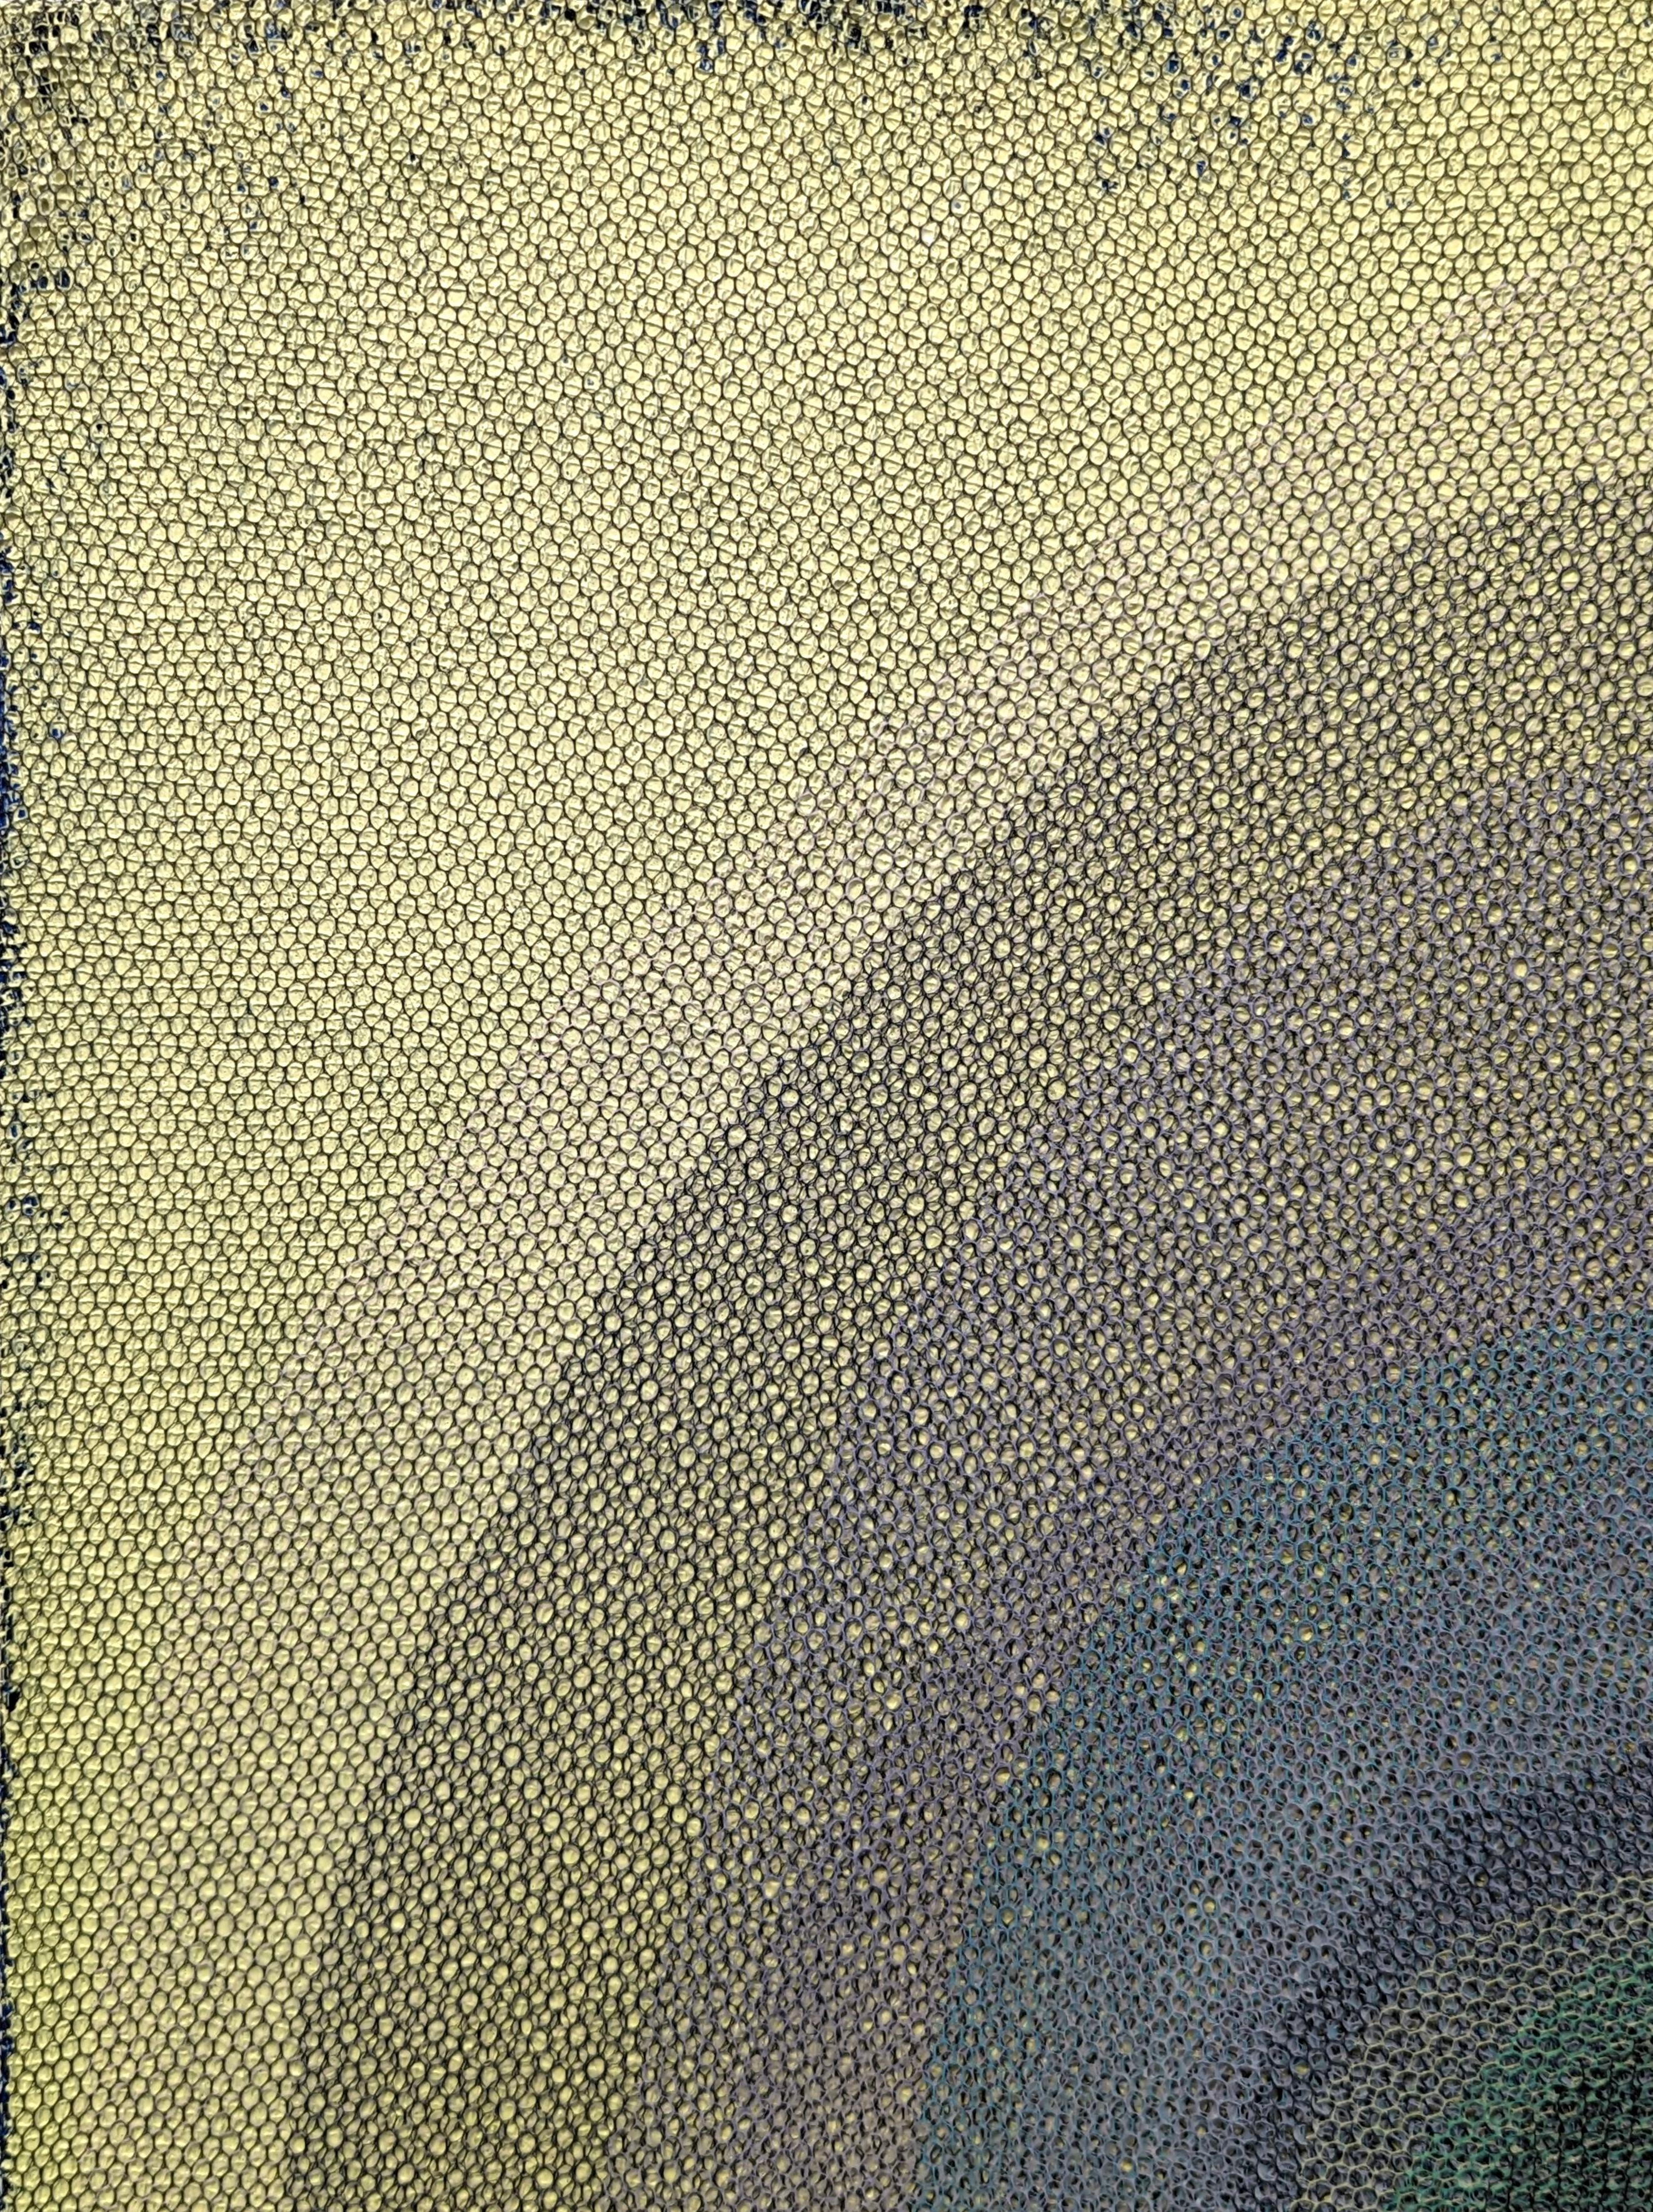 Farbenfrohes abstraktes Gemälde in Mischtechnik von Orna Feinstein, einer zeitgenössischen Künstlerin aus Houston. Das Werk zeigt mehrere Lagen bunter Netze vor einem grün getönten Hintergrund. Rückseitig signiert, betitelt und datiert. Derzeit